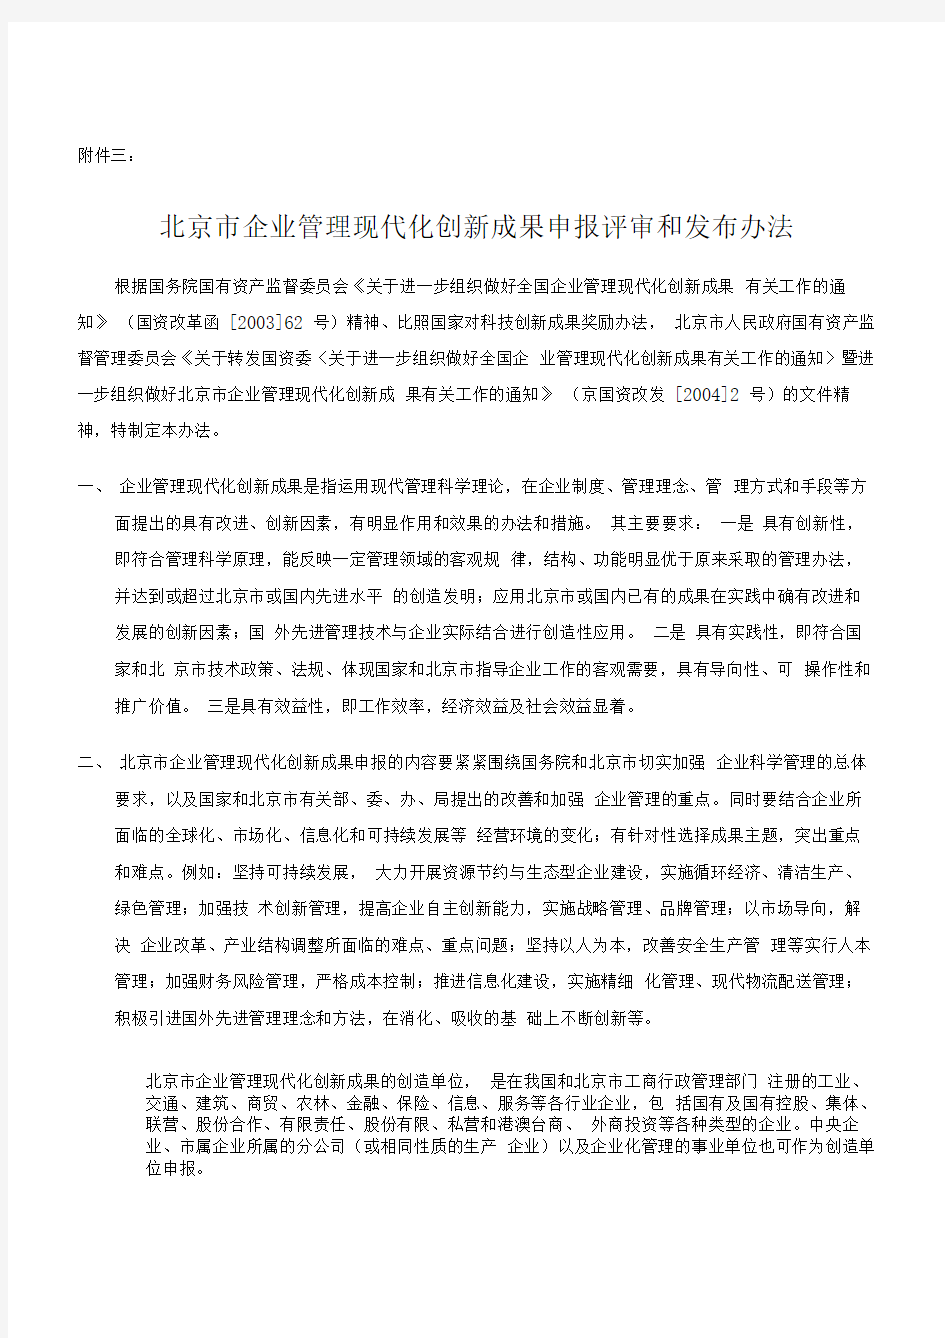 北京市企业管理现代化创新成果申报评审和发布办法